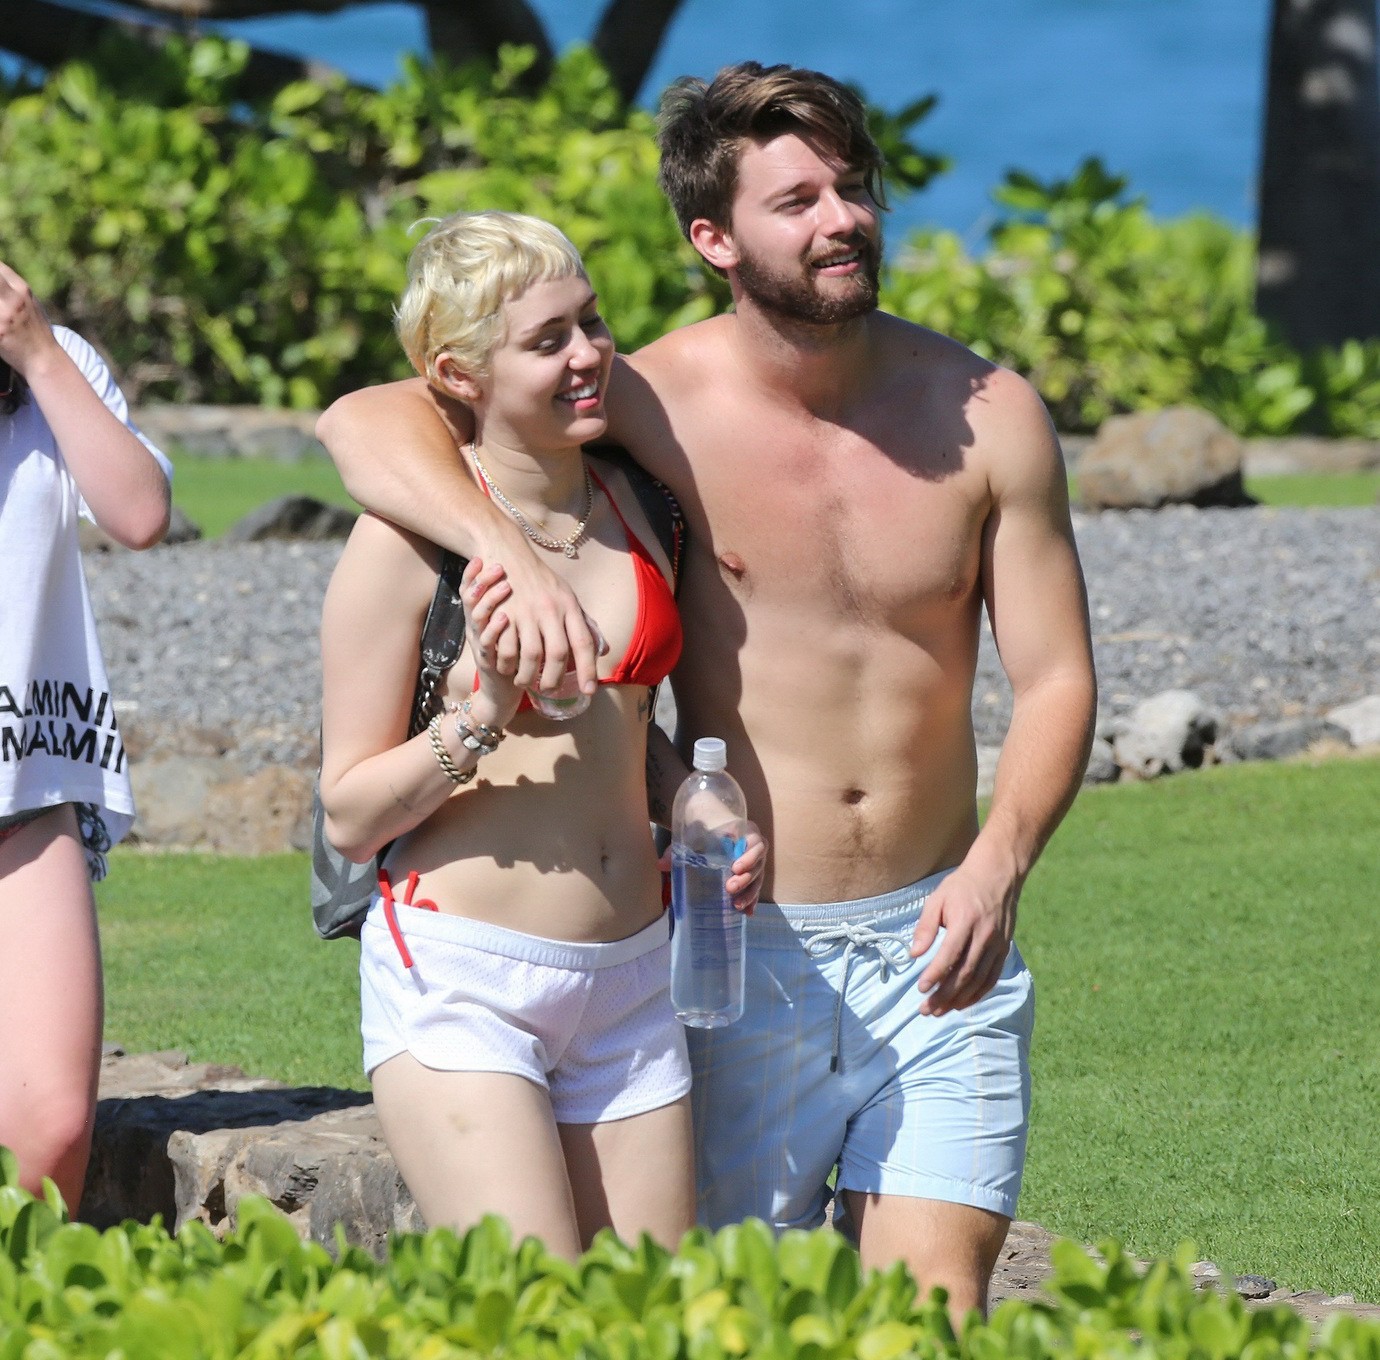 Miley cyrus con un diminuto bikini rojo y unos shorts transparentes en sus vacaciones en hawai
 #75175134